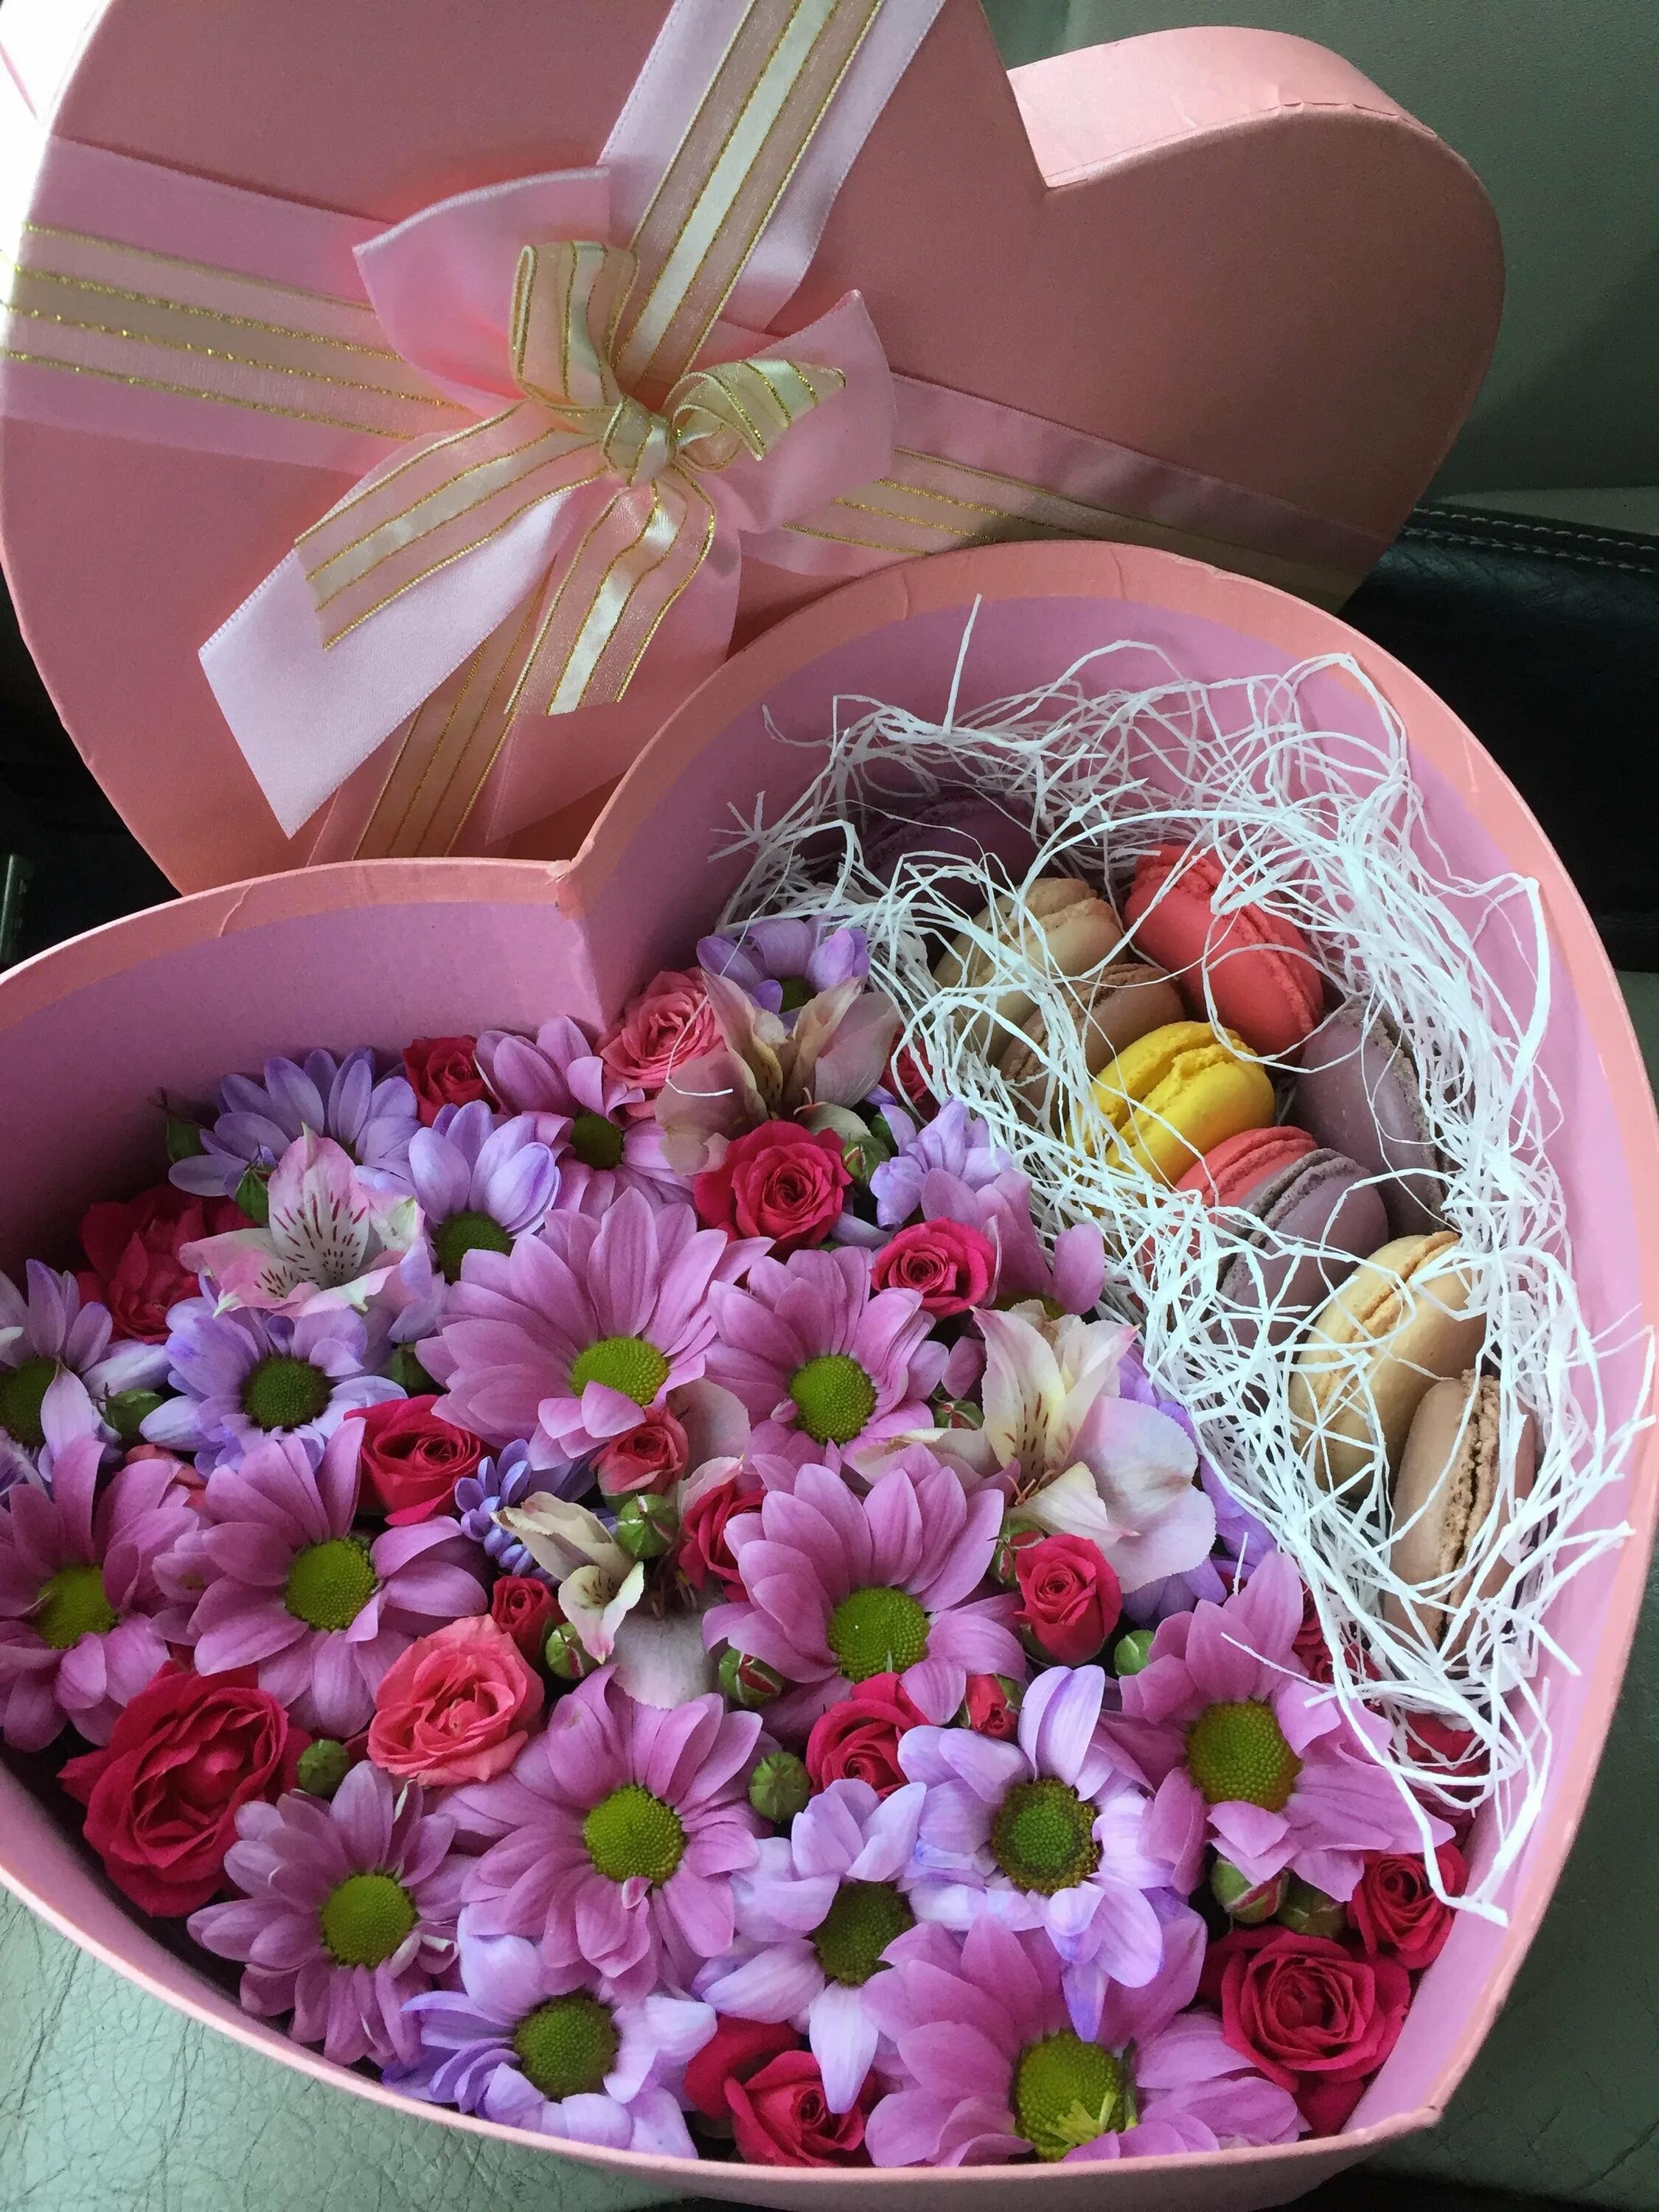 Коробка с цветами и конфетами. Цветочные коробочки с конфетами. Цветы с конфетами в коробке. Подарочная коробка с цветами и конфетами. Цветы в коробке с конфетами